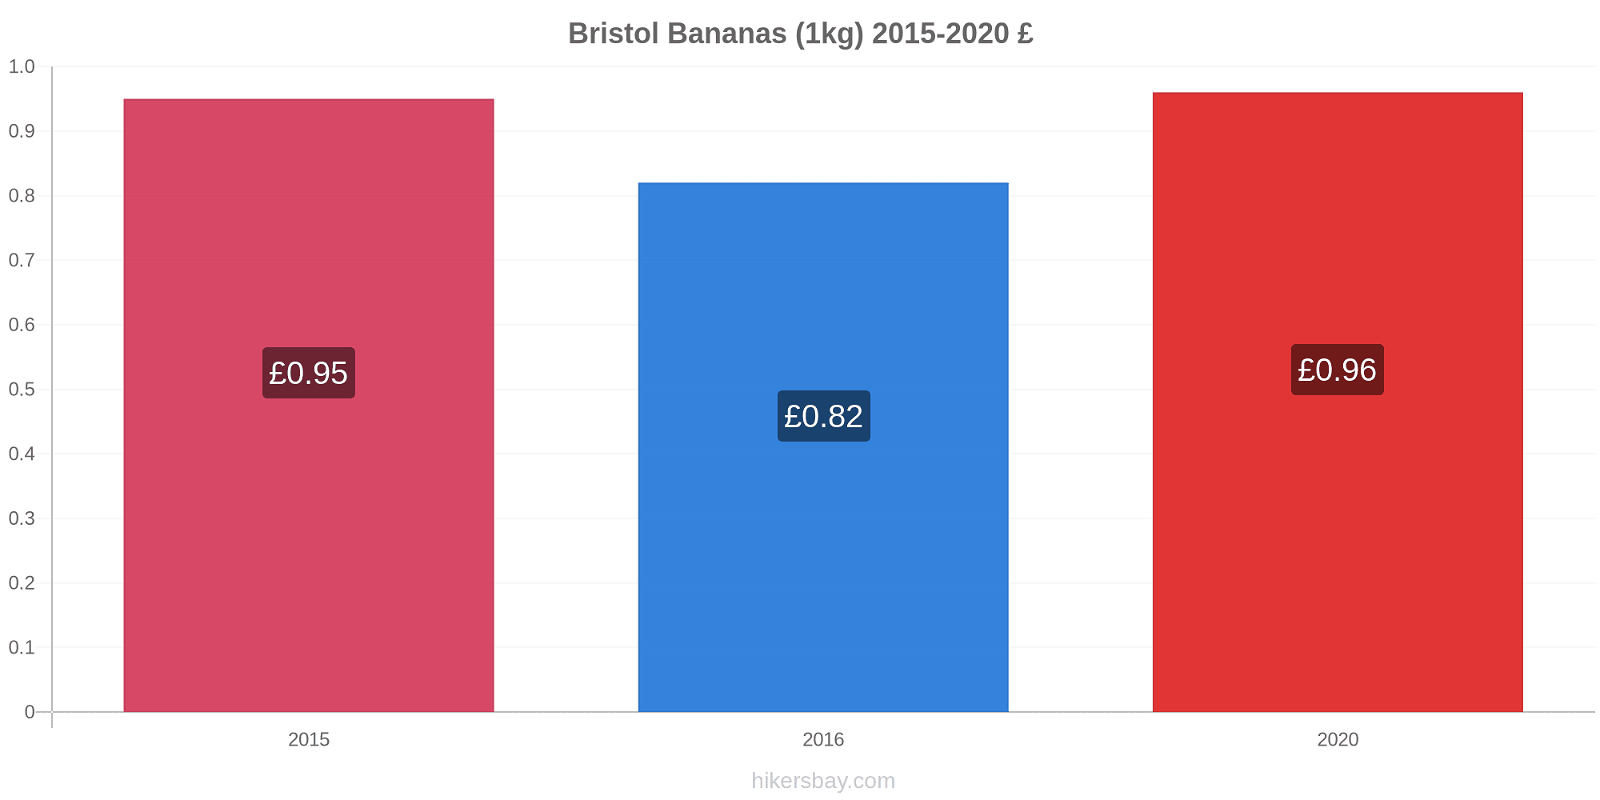 Bristol variação de preço Banana (1kg) hikersbay.com